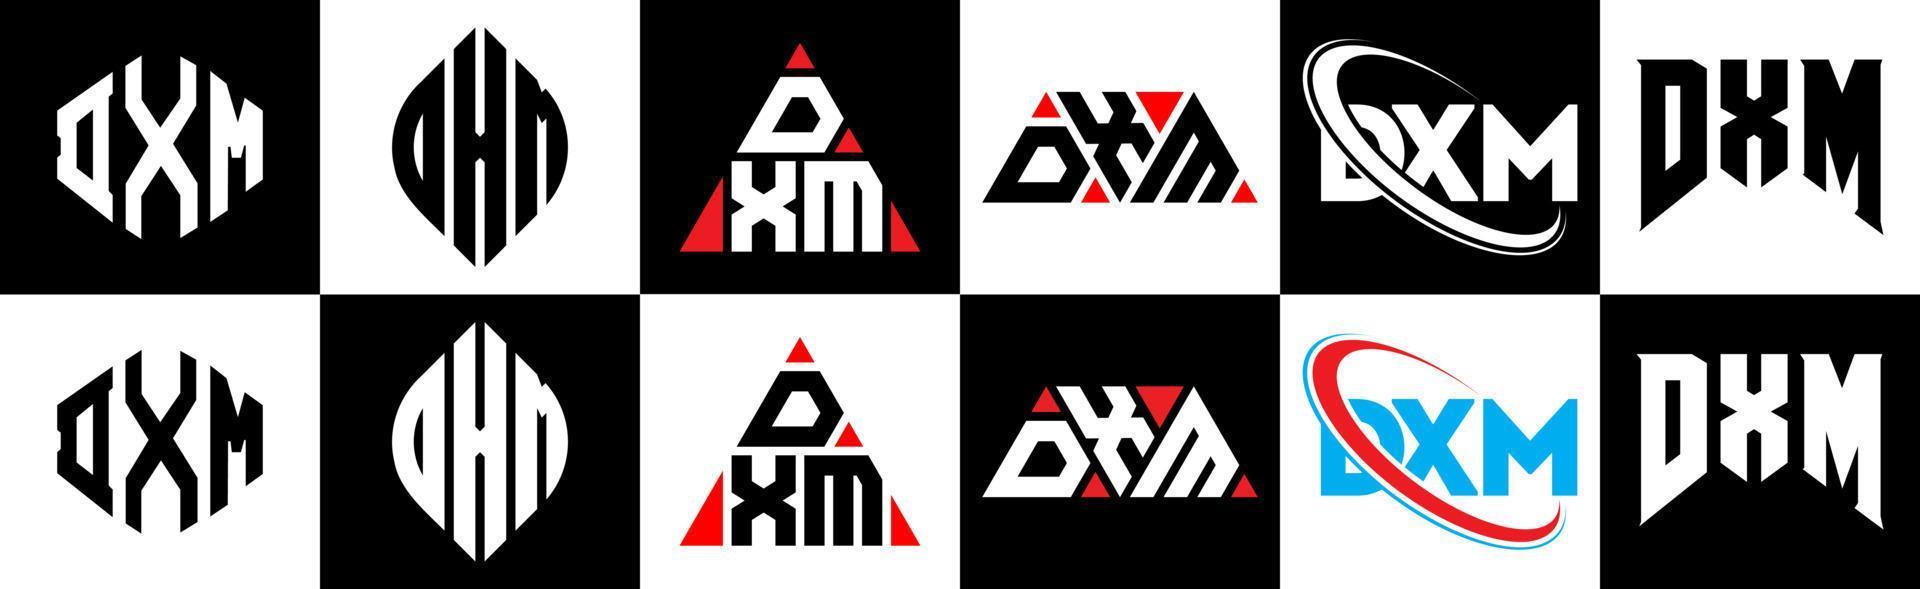 création de logo de lettre dxm en six styles. dxm polygone, cercle, triangle, hexagone, style plat et simple avec logo de lettre de variation de couleur noir et blanc dans un plan de travail. logo minimaliste et classique dxm vecteur